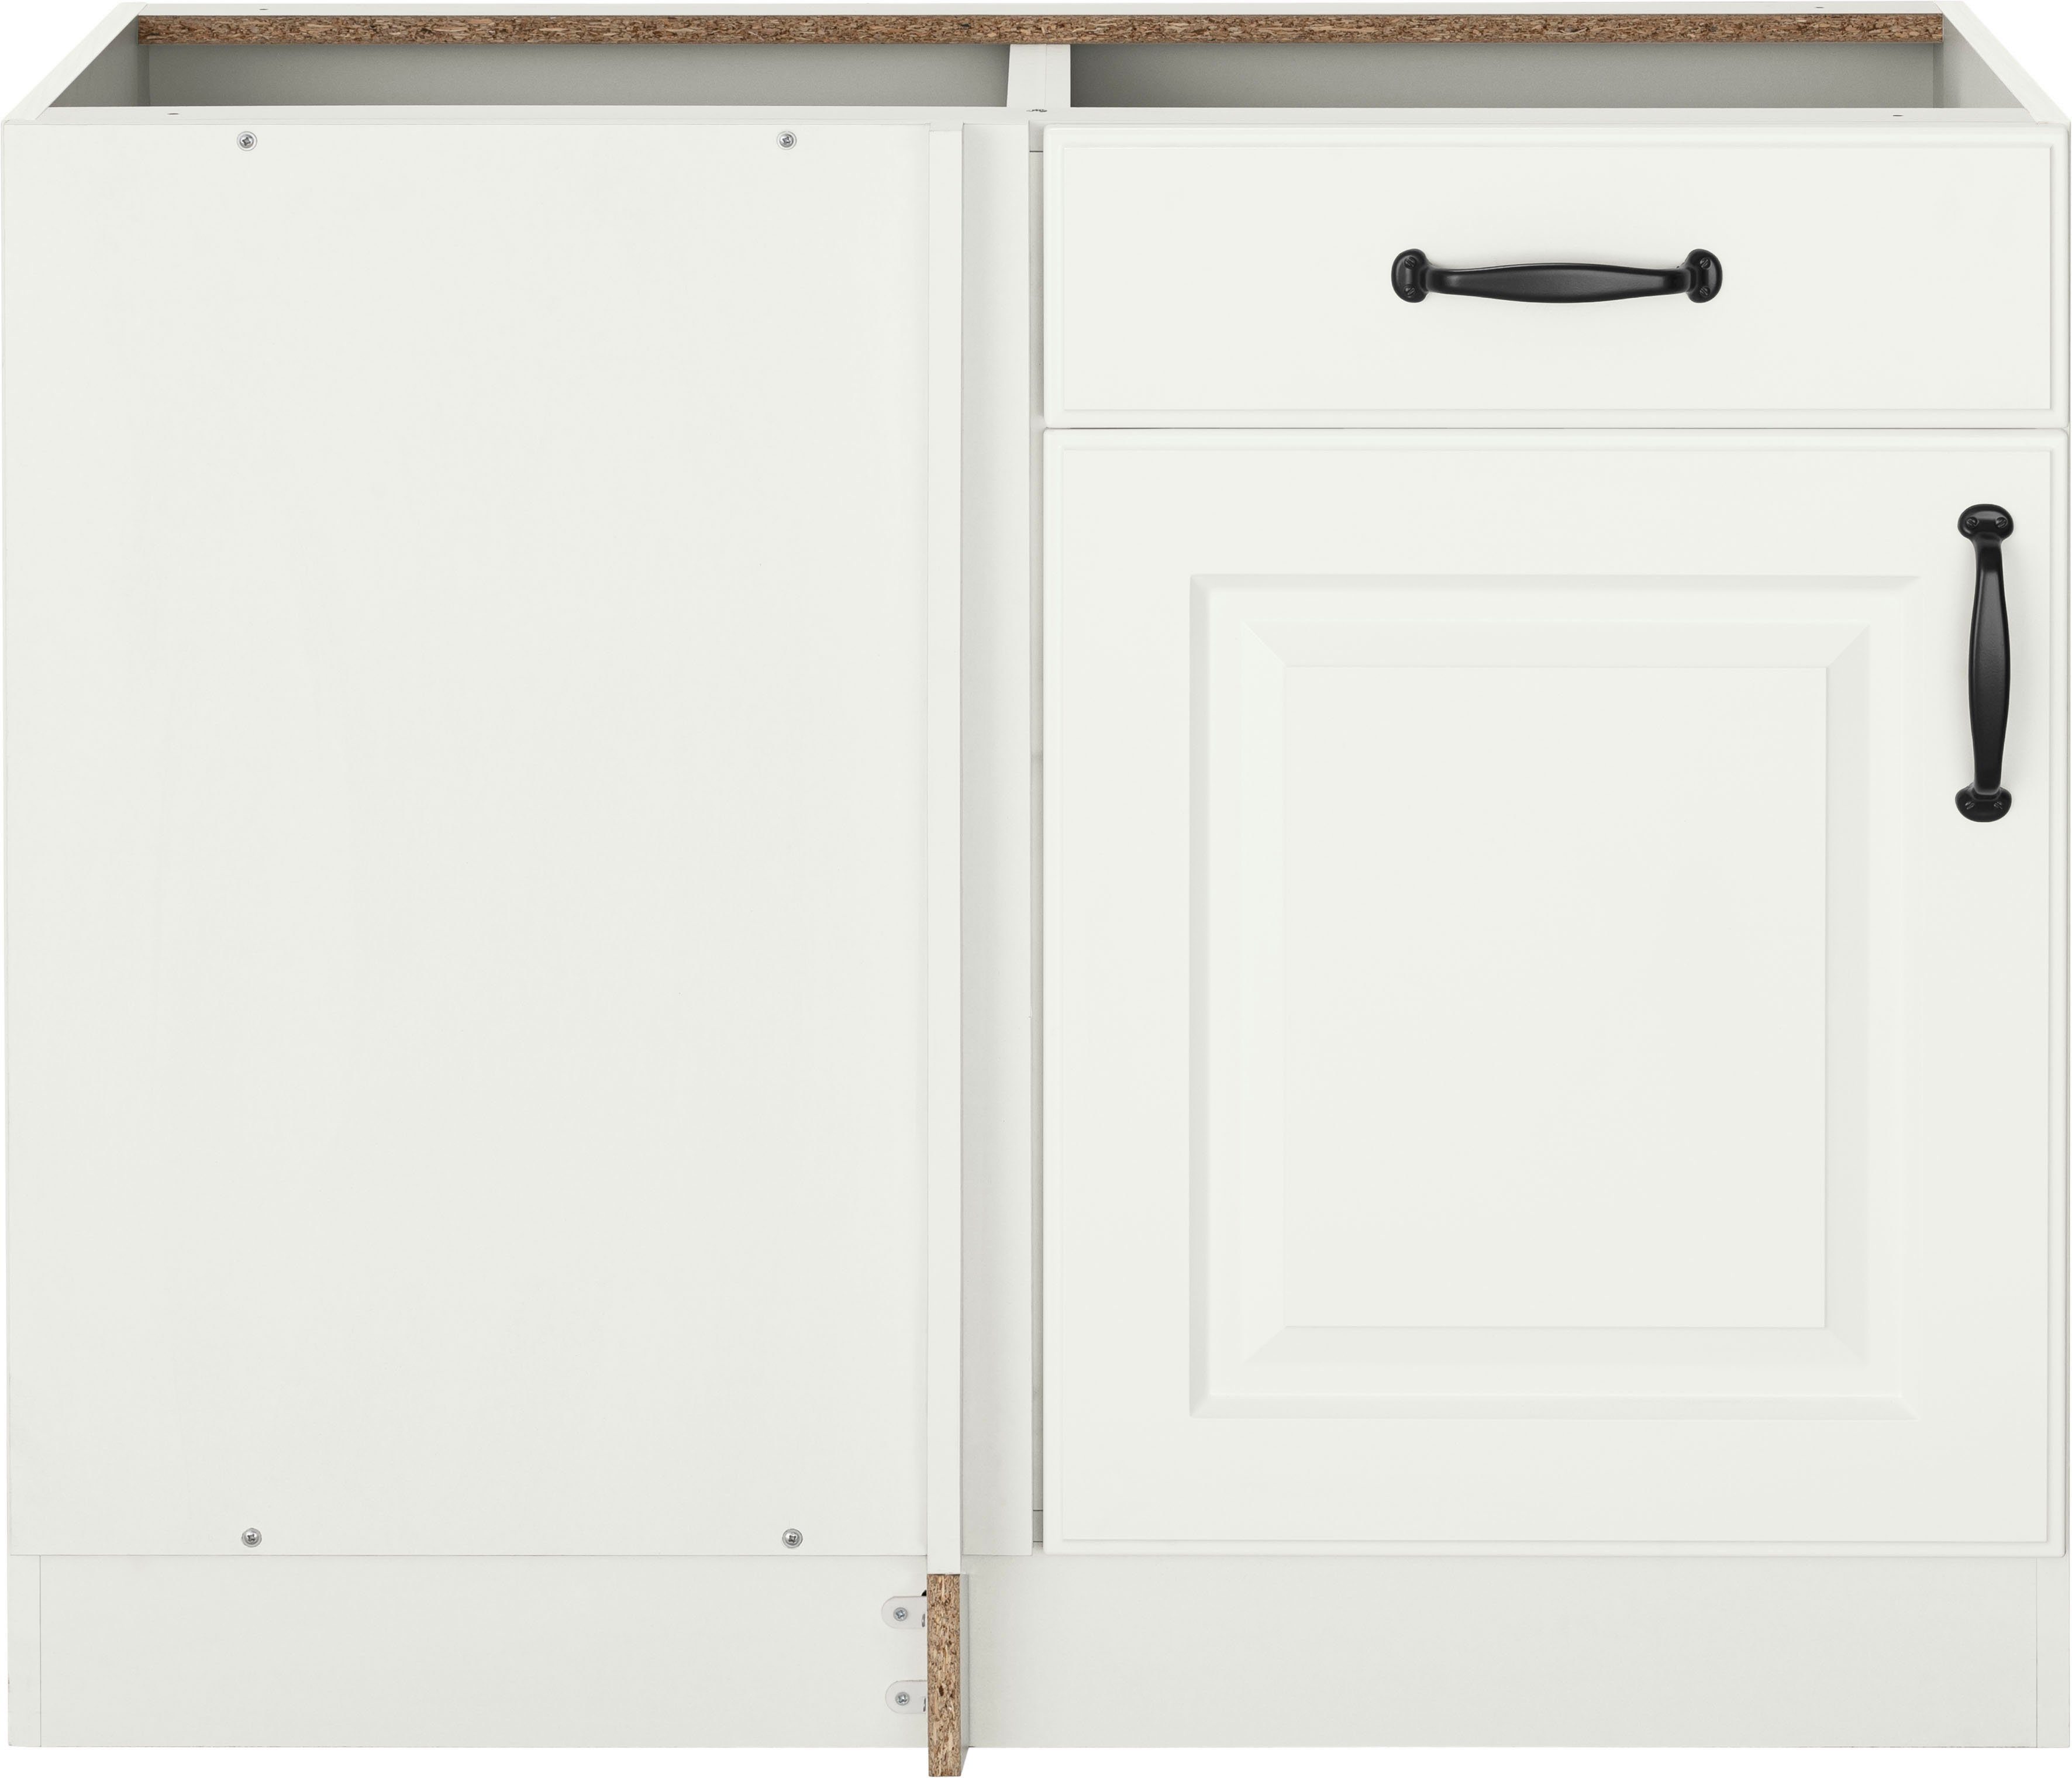 wiho Küchen Eckunterschrank Erla 100 cm breit, Kassettenfront, Planungsmaß 110 cm, ohne Arbeitsplatte Weiß/Weiß | Weiß